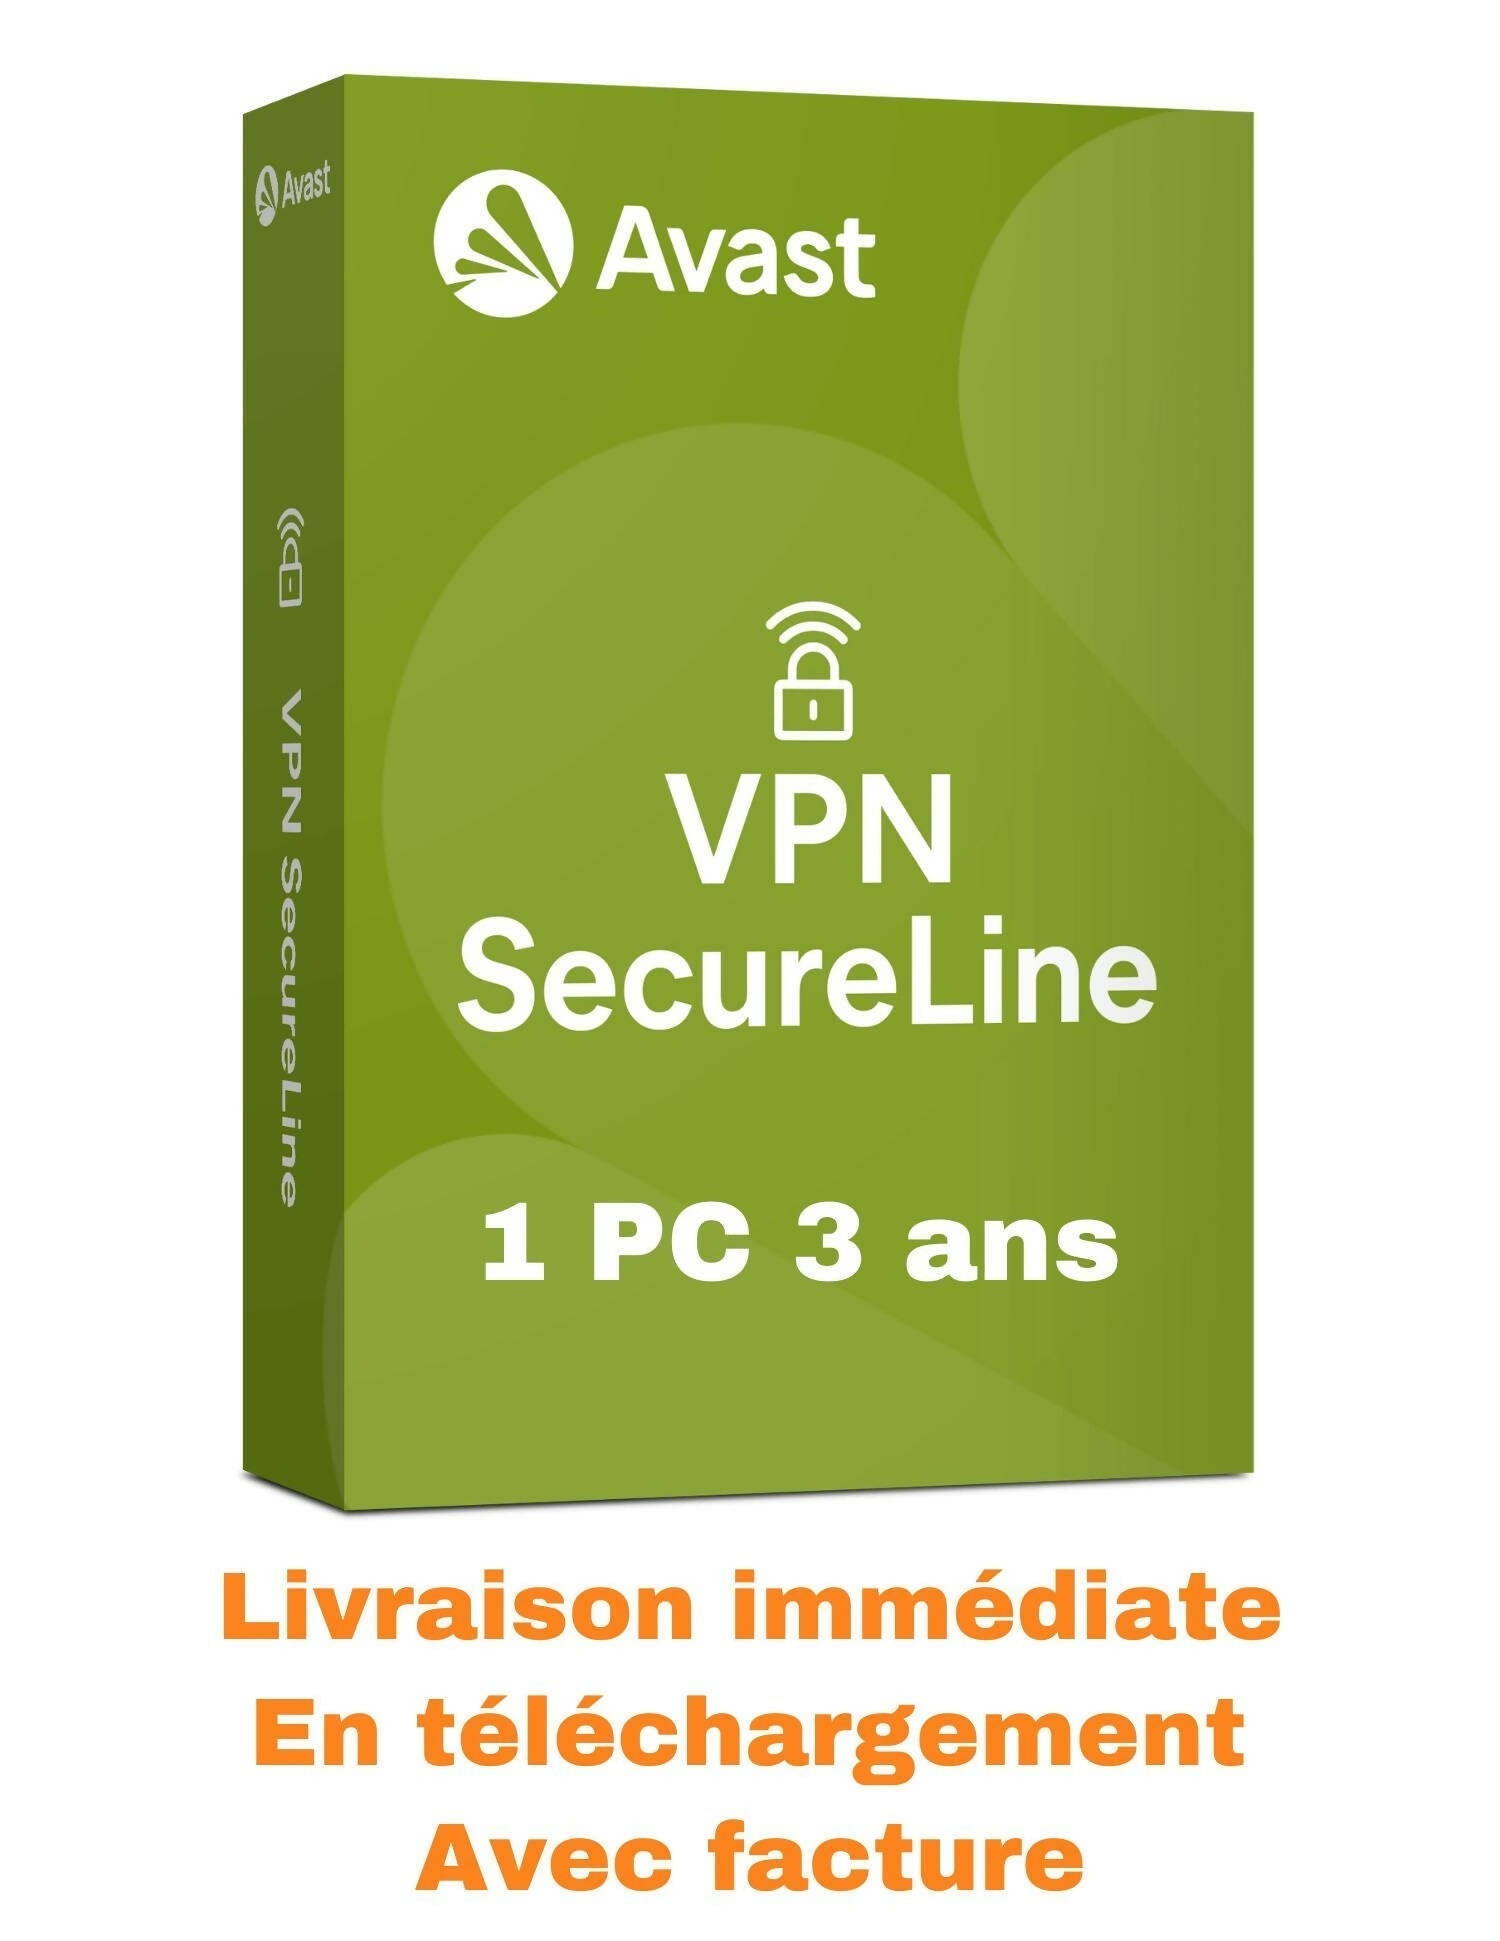 Avast SecureLine VPN 1 PC 3 ans clicktofournisseur.com